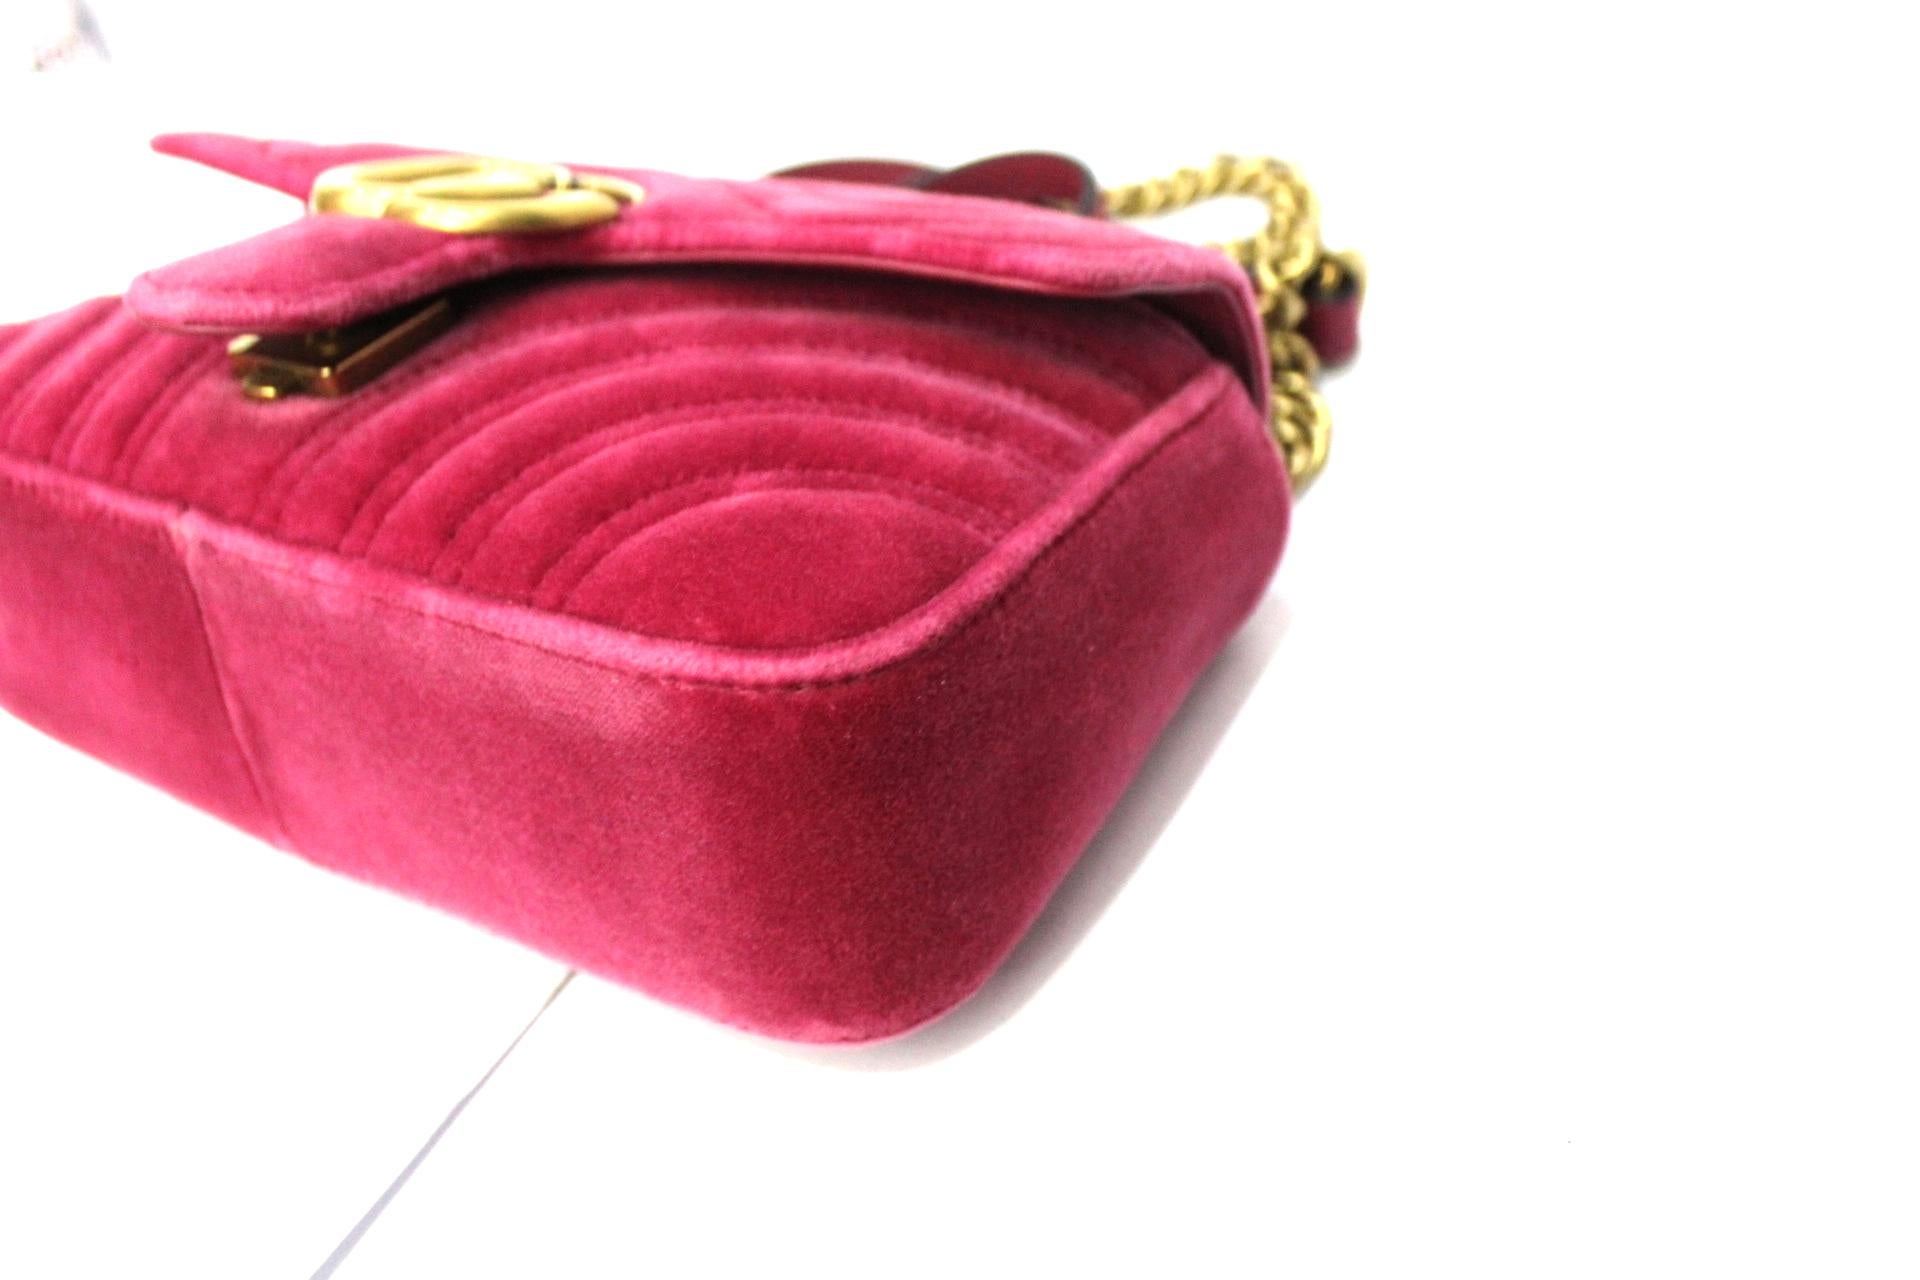 pink velvet gucci bag